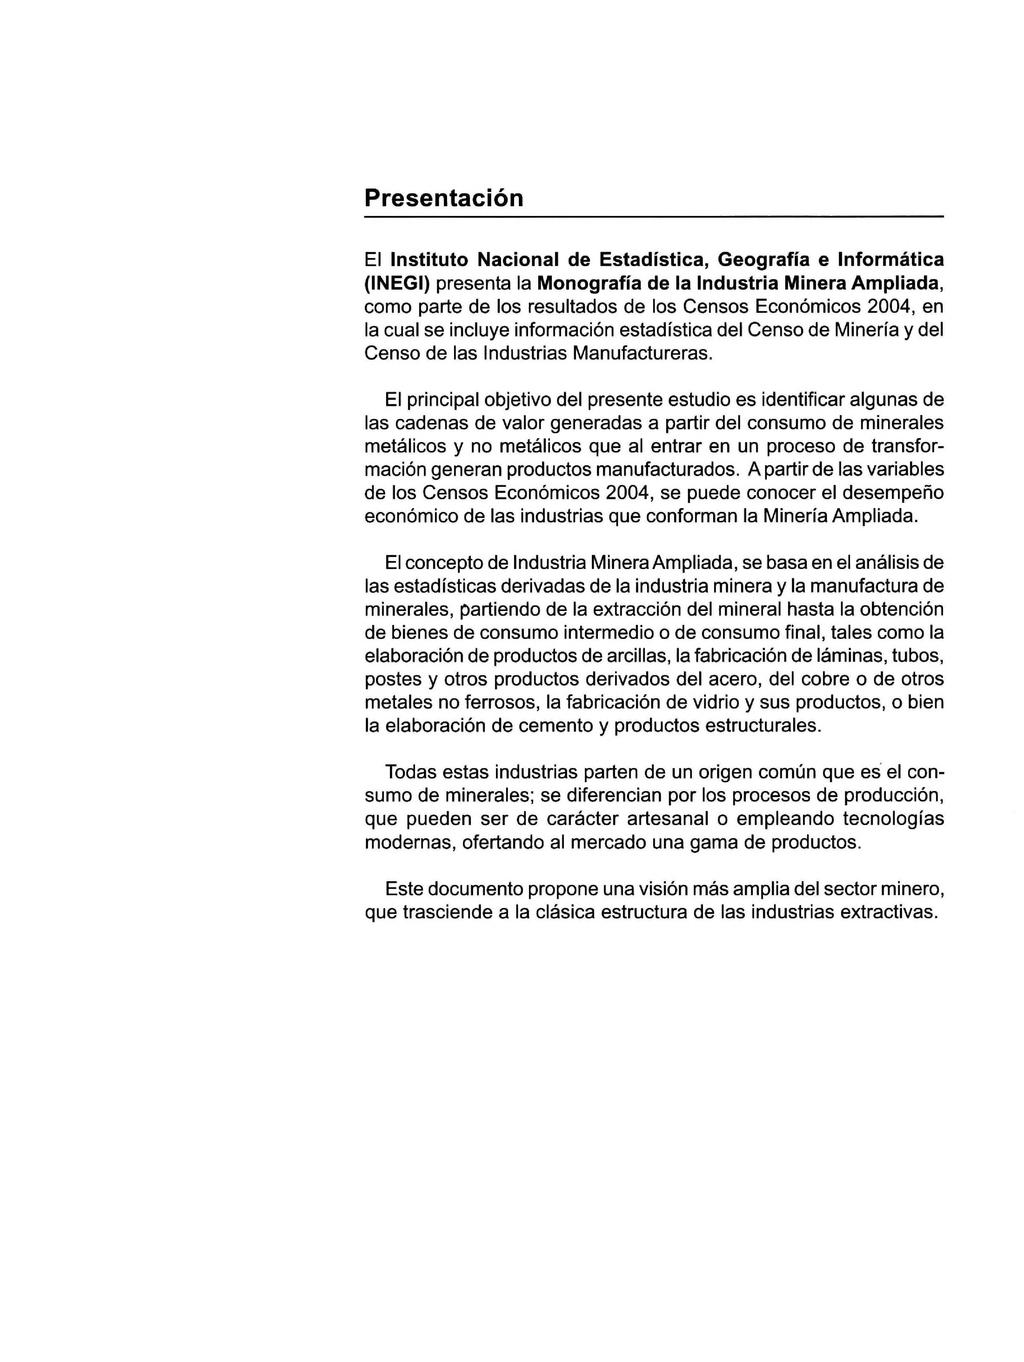 Presentación El Instituto Nacional de Estadística, Geografía e Informática (INEGI) presenta la Monografía de la Industria Minera Ampliada, como parte de los resultados de los Censos Económicos 2004,